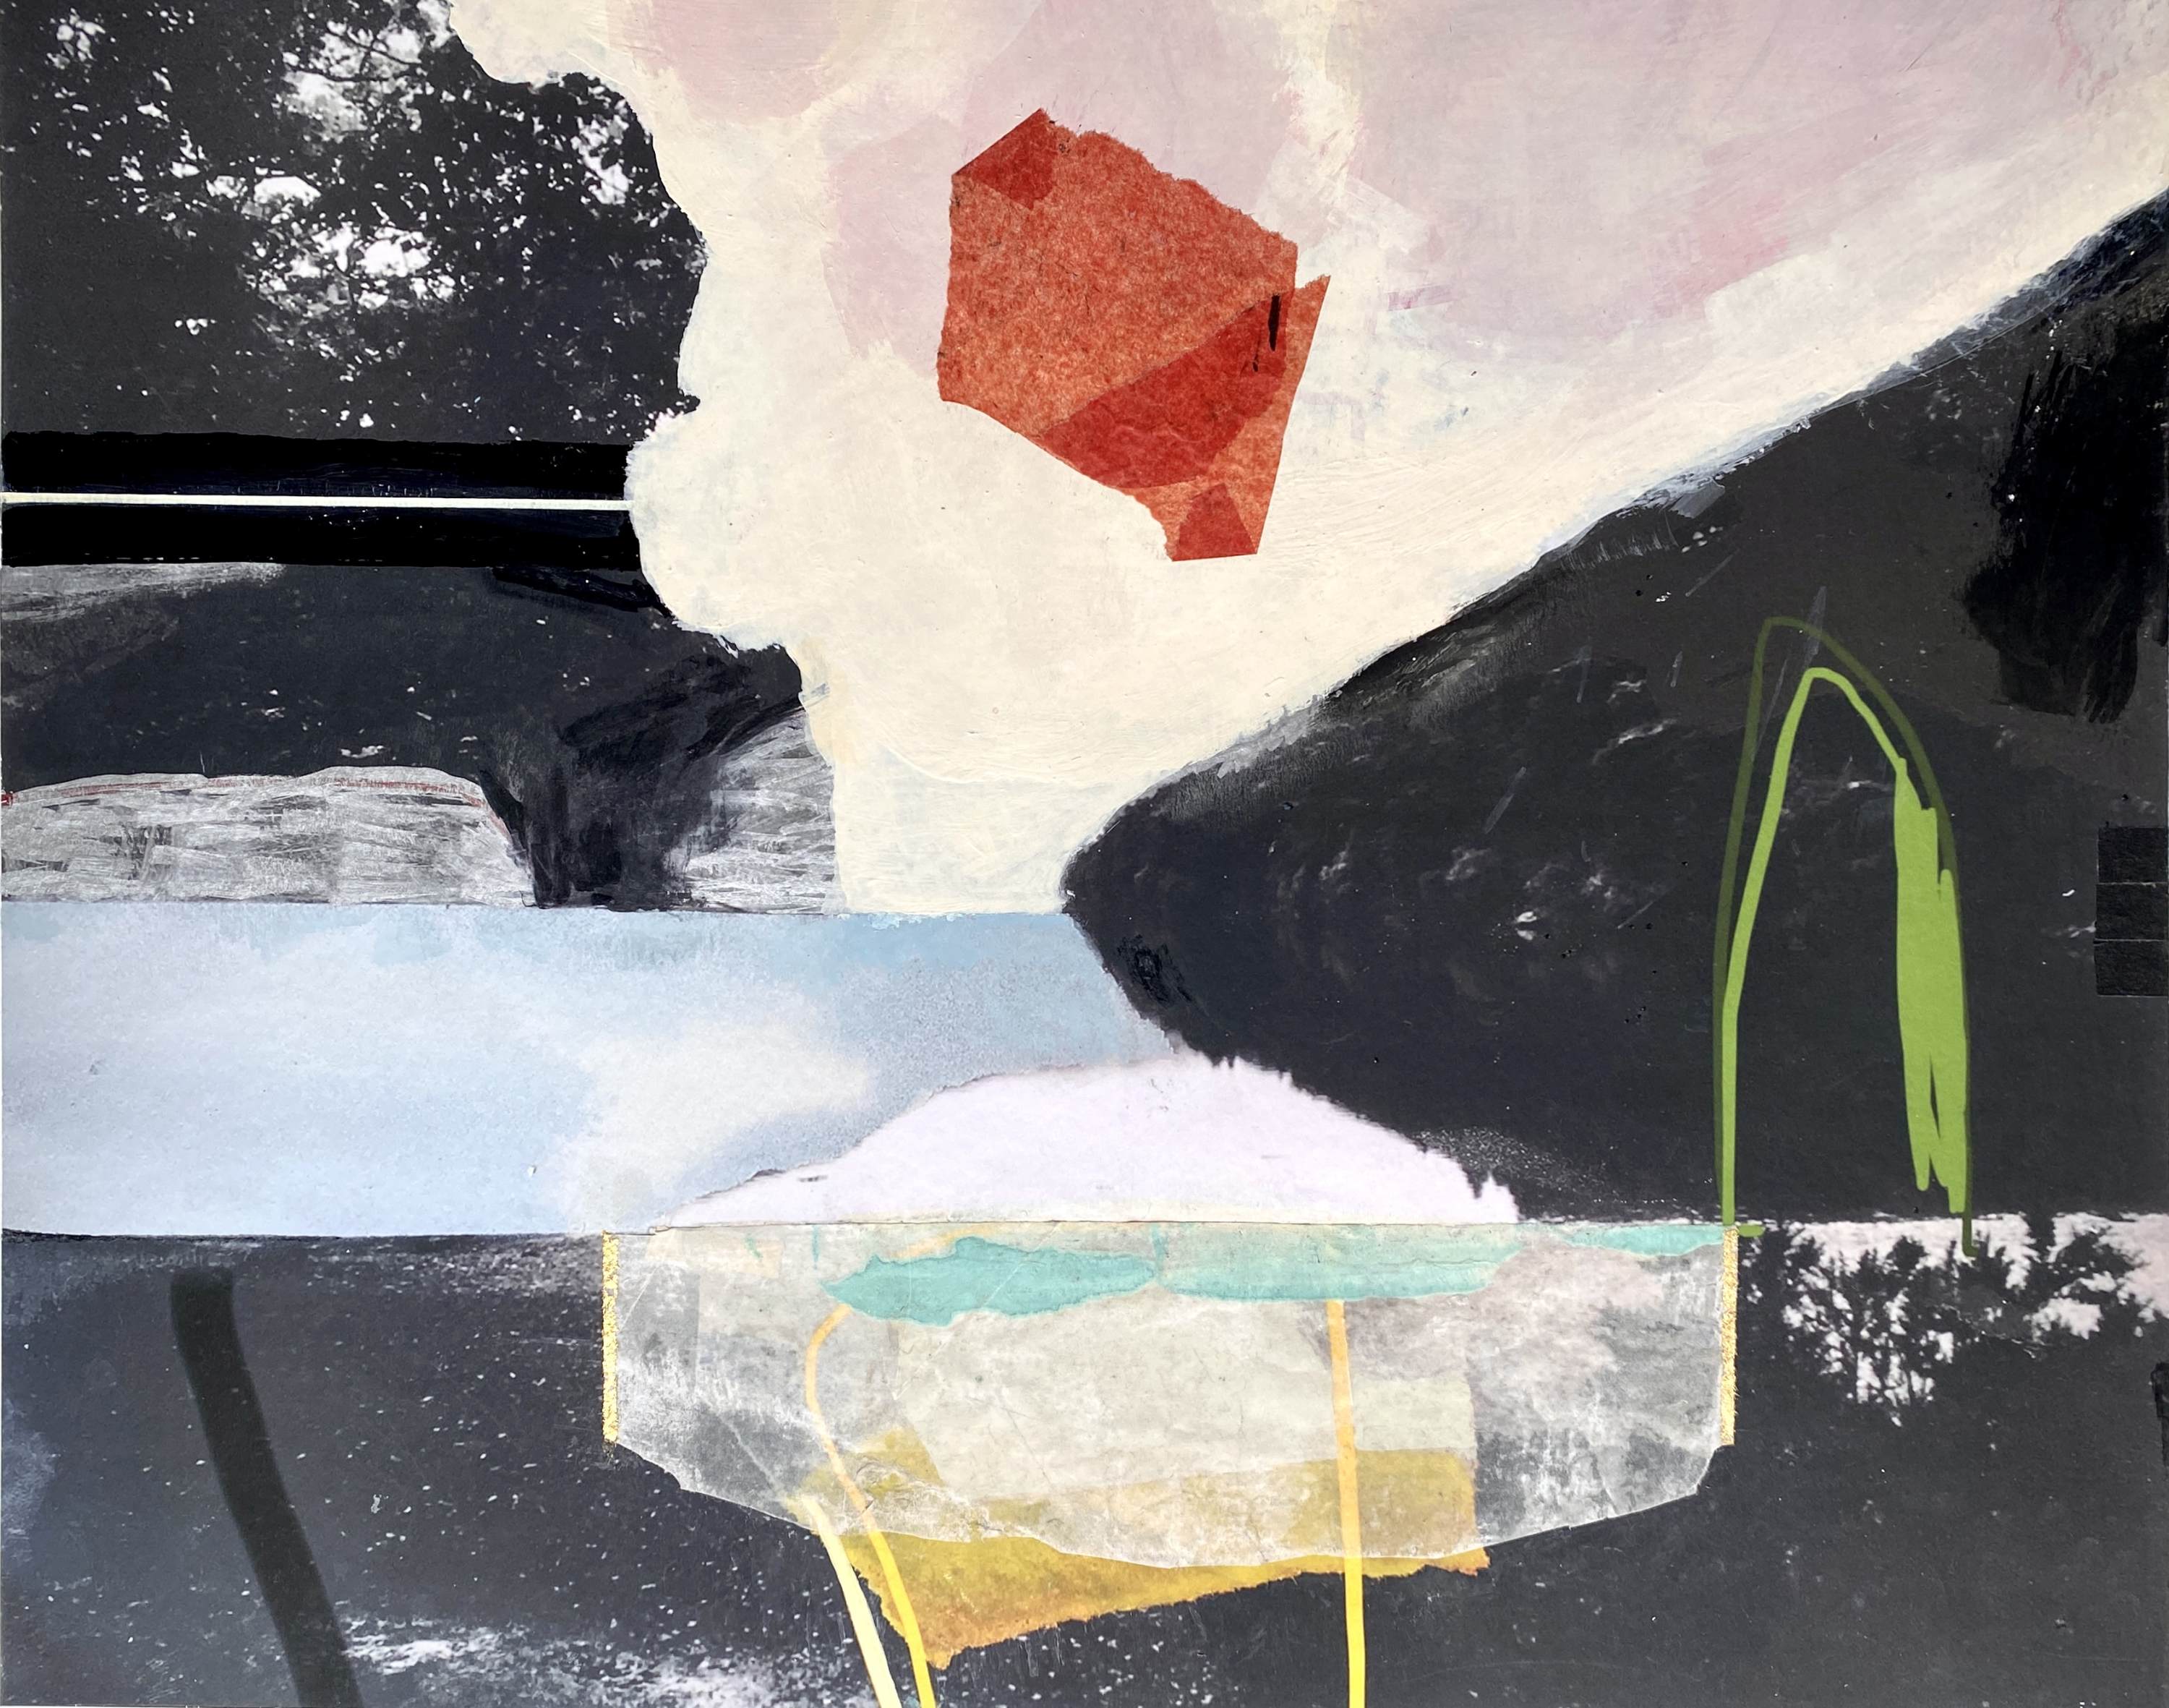 anne-brochu-lambert-perspectives-abstract-digital-mixed-media-landscape-art